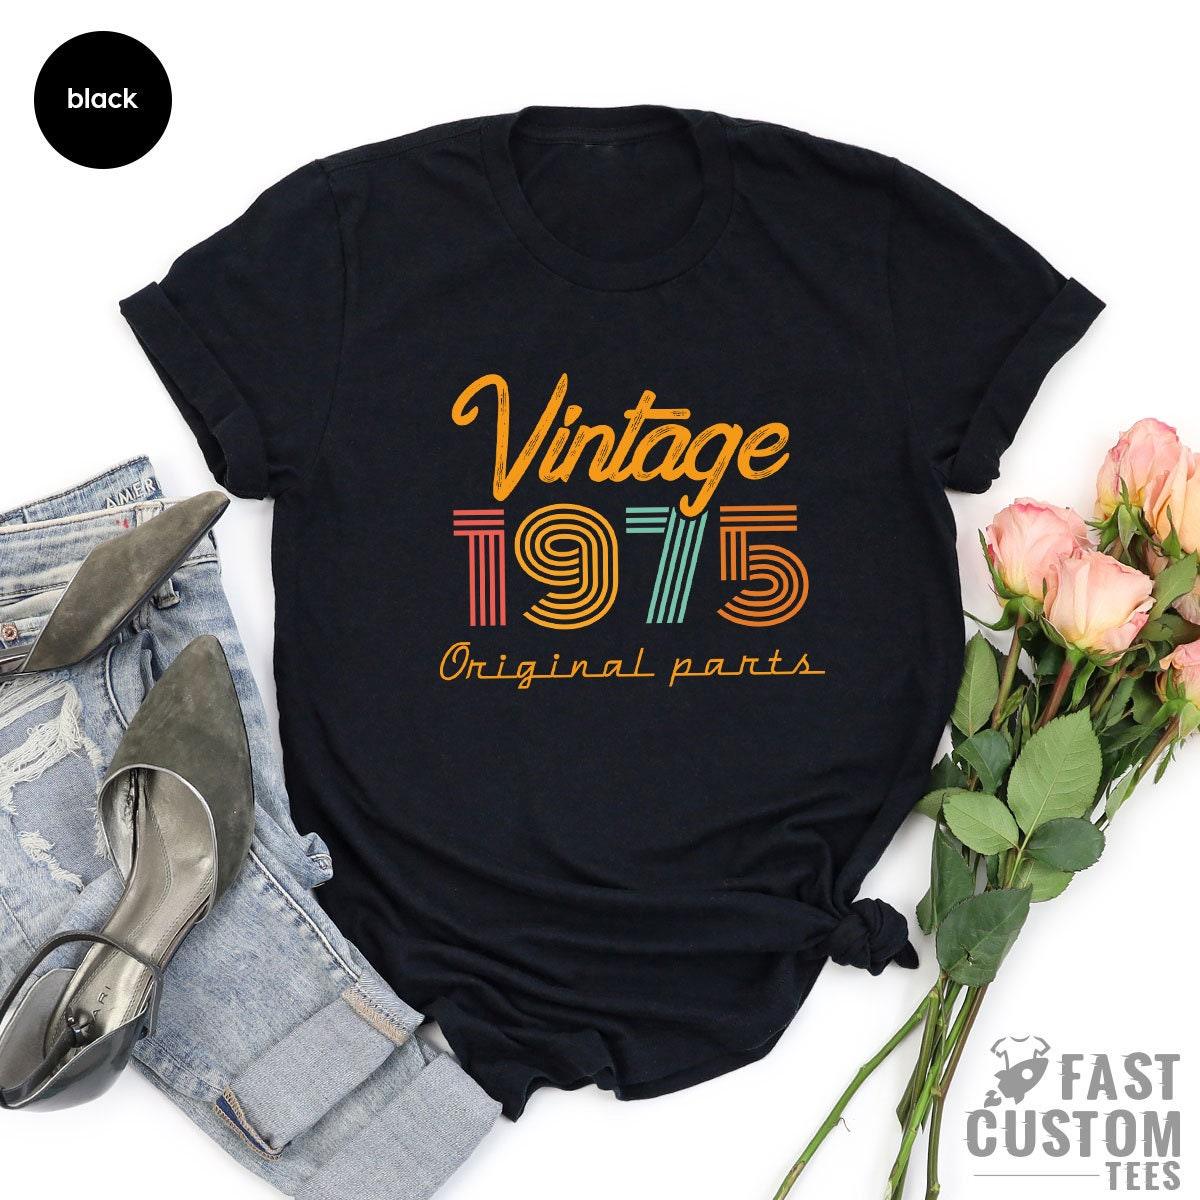 46th Birthday T-Shirt, Vintage T Shirt, Vintage 1975 Shirt, 46th Birthday Gift For Women, 46th Birthday Shirt Men, Retro Shirt, Vintage Shirts - Fastdeliverytees.com